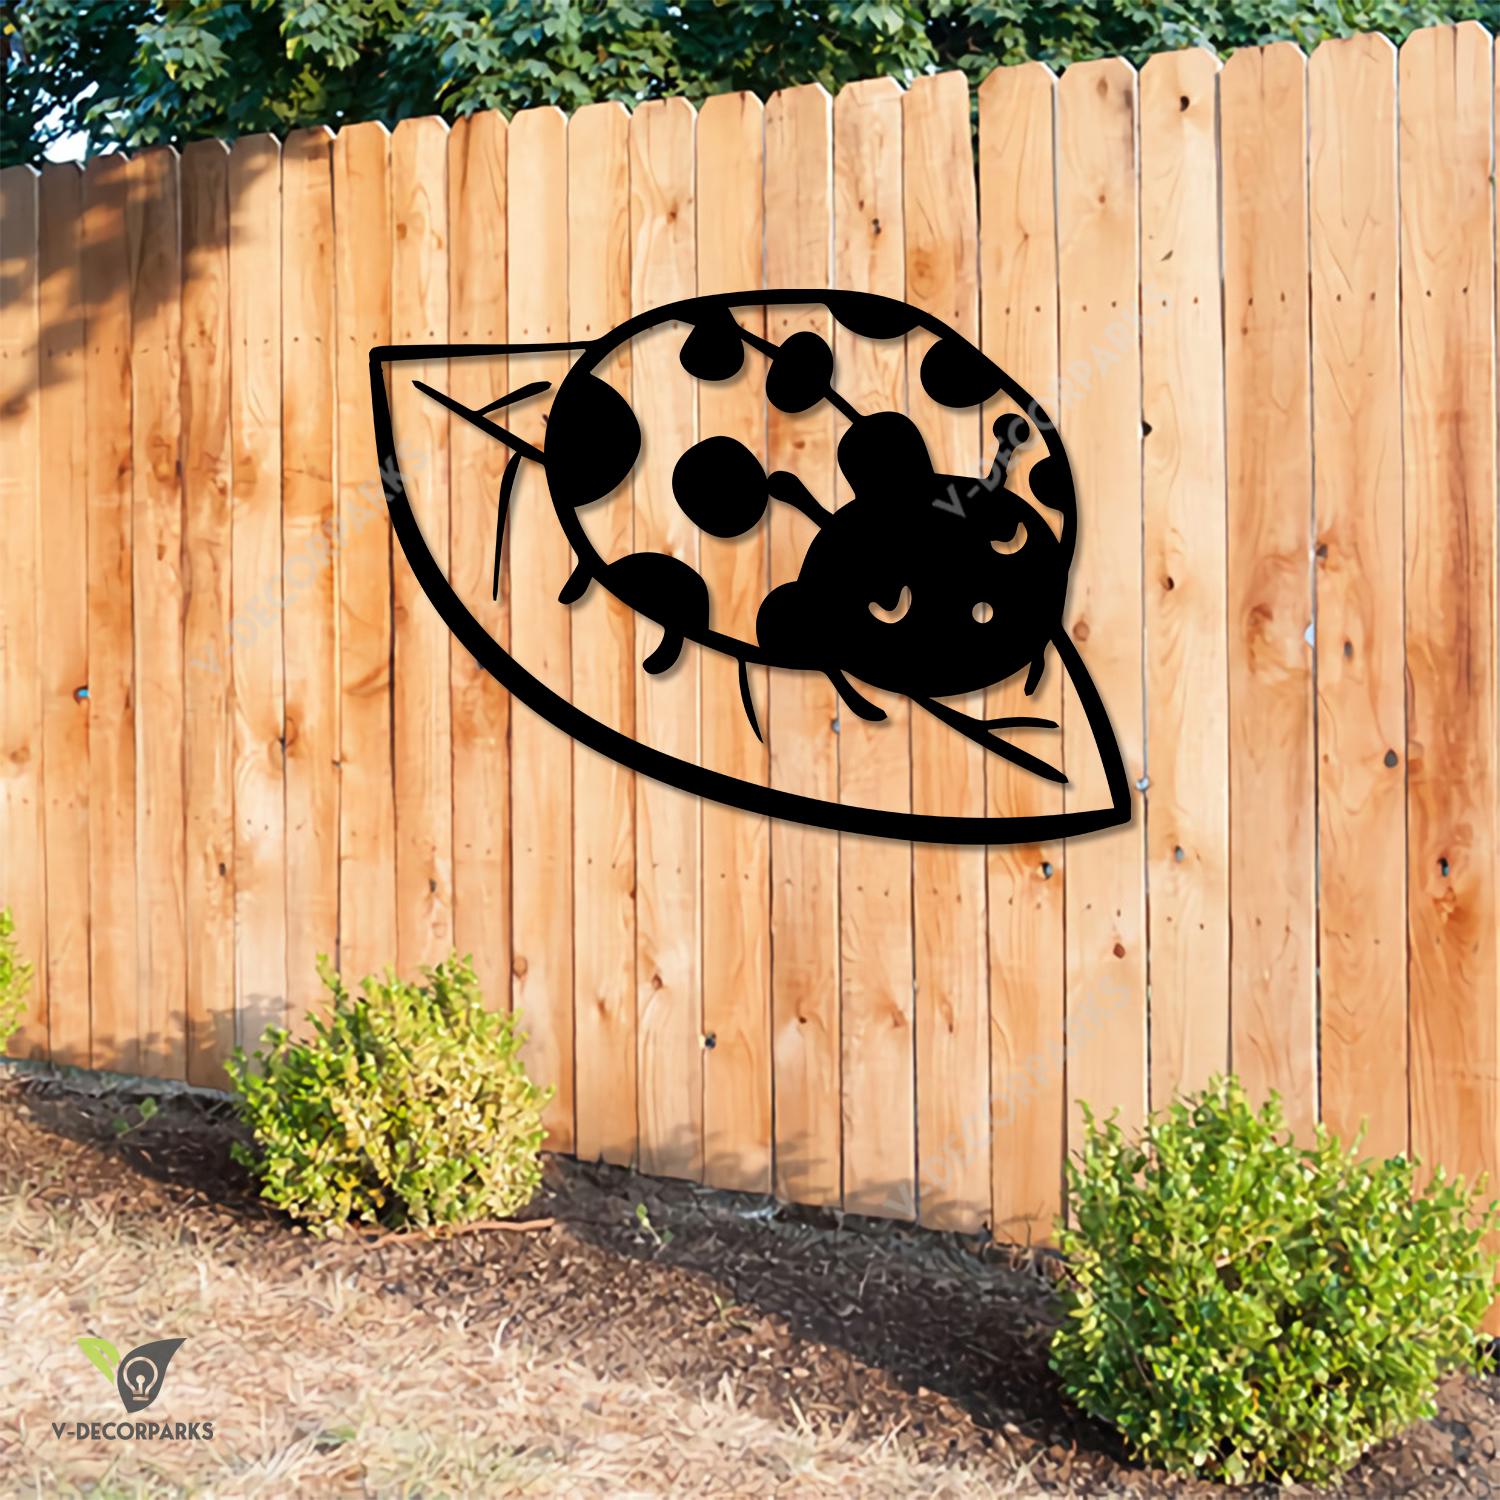 Ladybug On Leave Metal Art, Ladybug Plasma Cut Fence Accent